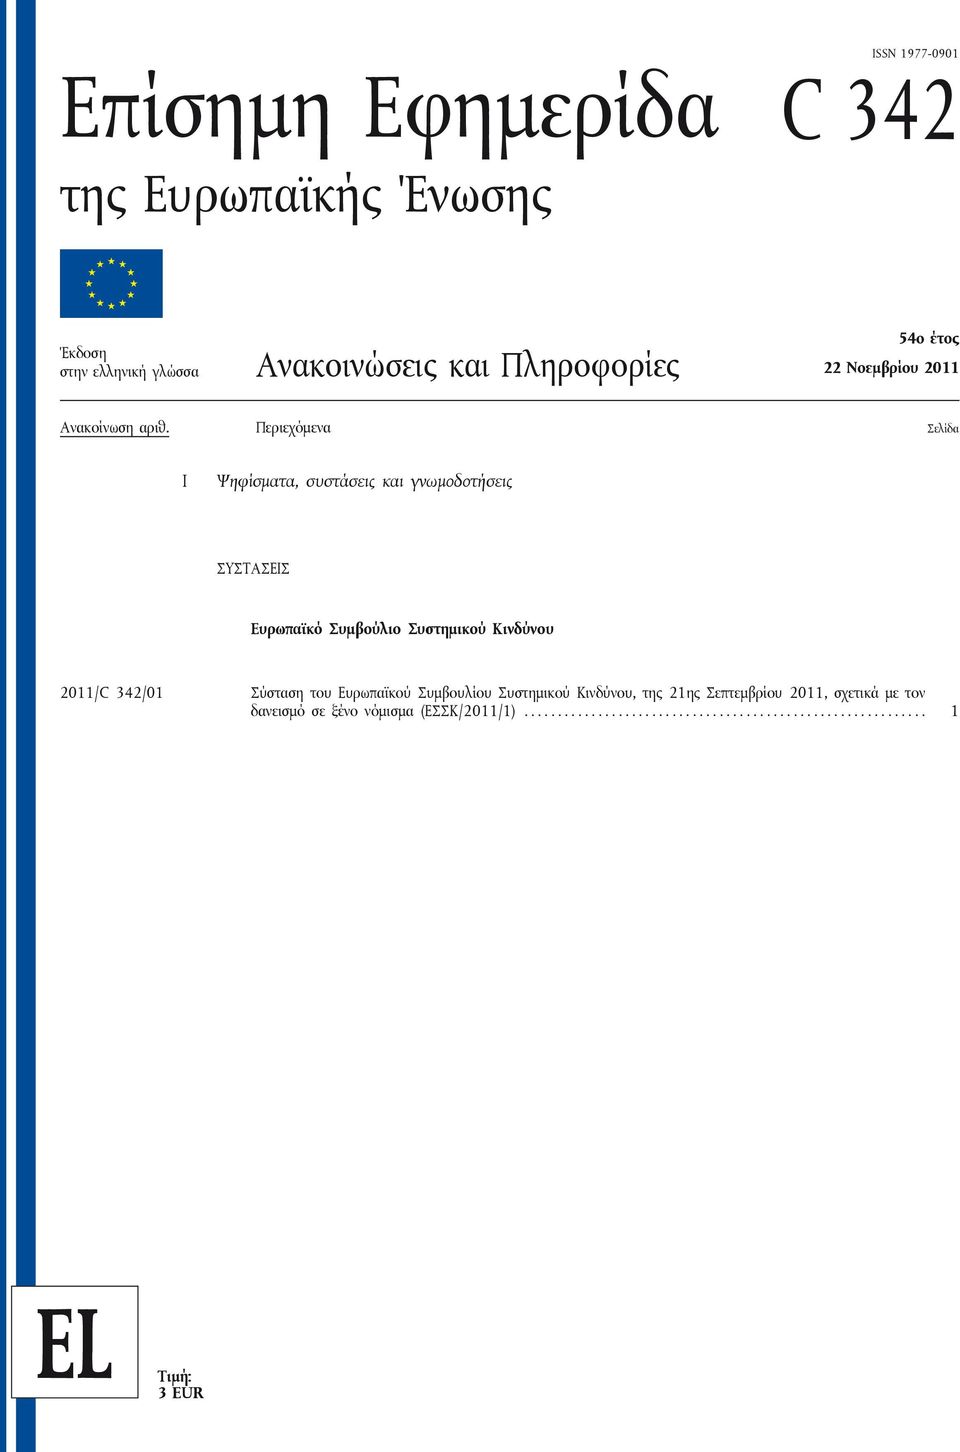 Περιεχόμενα Σελίδα I Ψηφίσματα, συστάσεις και γνωμοδοτήσεις ΣΥΣΤΑΣΕΙΣ Ευρωπαϊκό Συμβούλιο Συστημικού Κινδύνου 2011/C 342/01